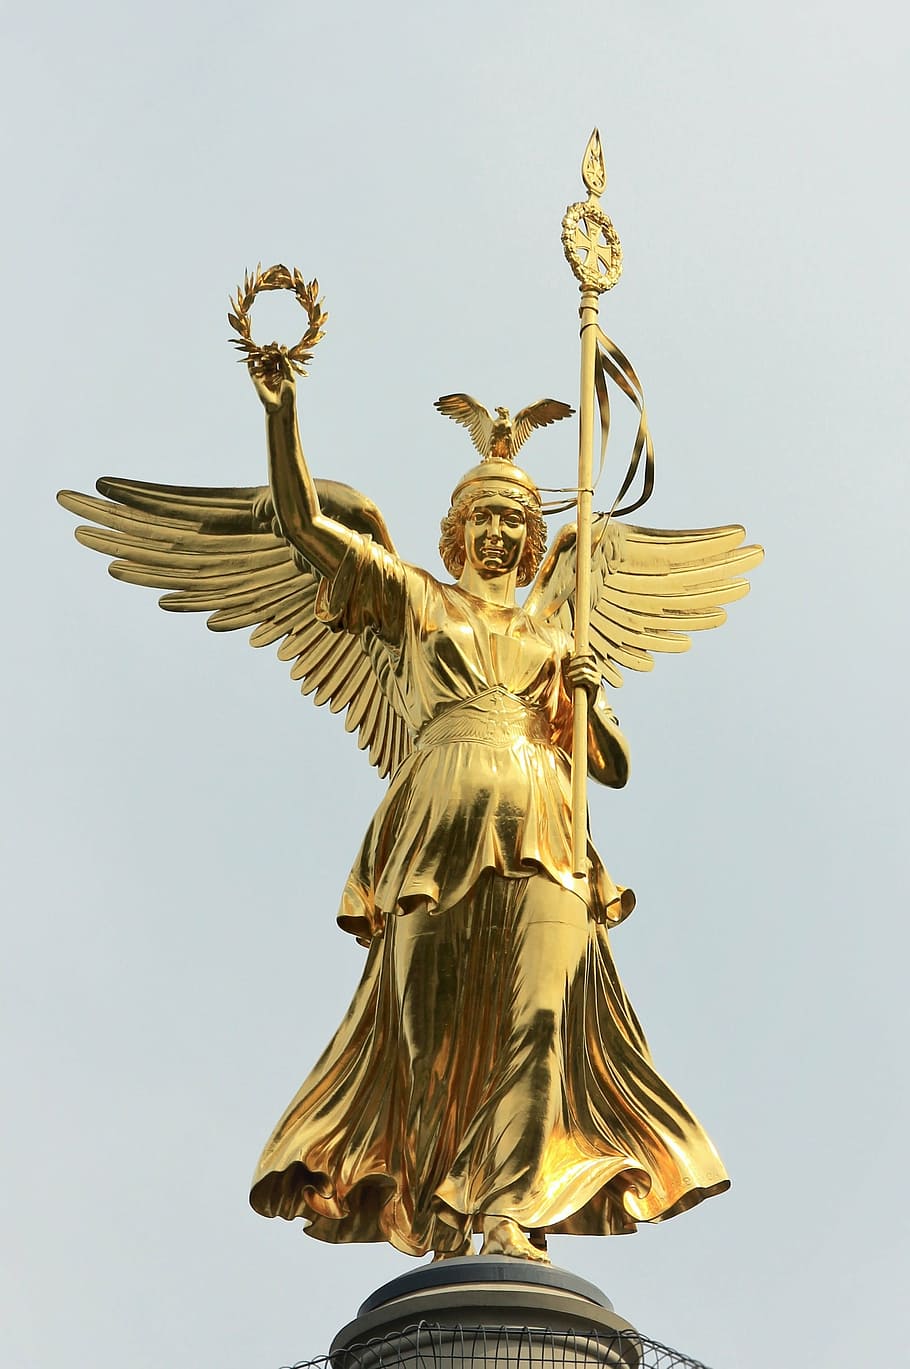 ゴールドelse, siegessäule, ベルリン, ランドマーク, 首都, 記念碑, 天使, 大スター, 像, 彫刻